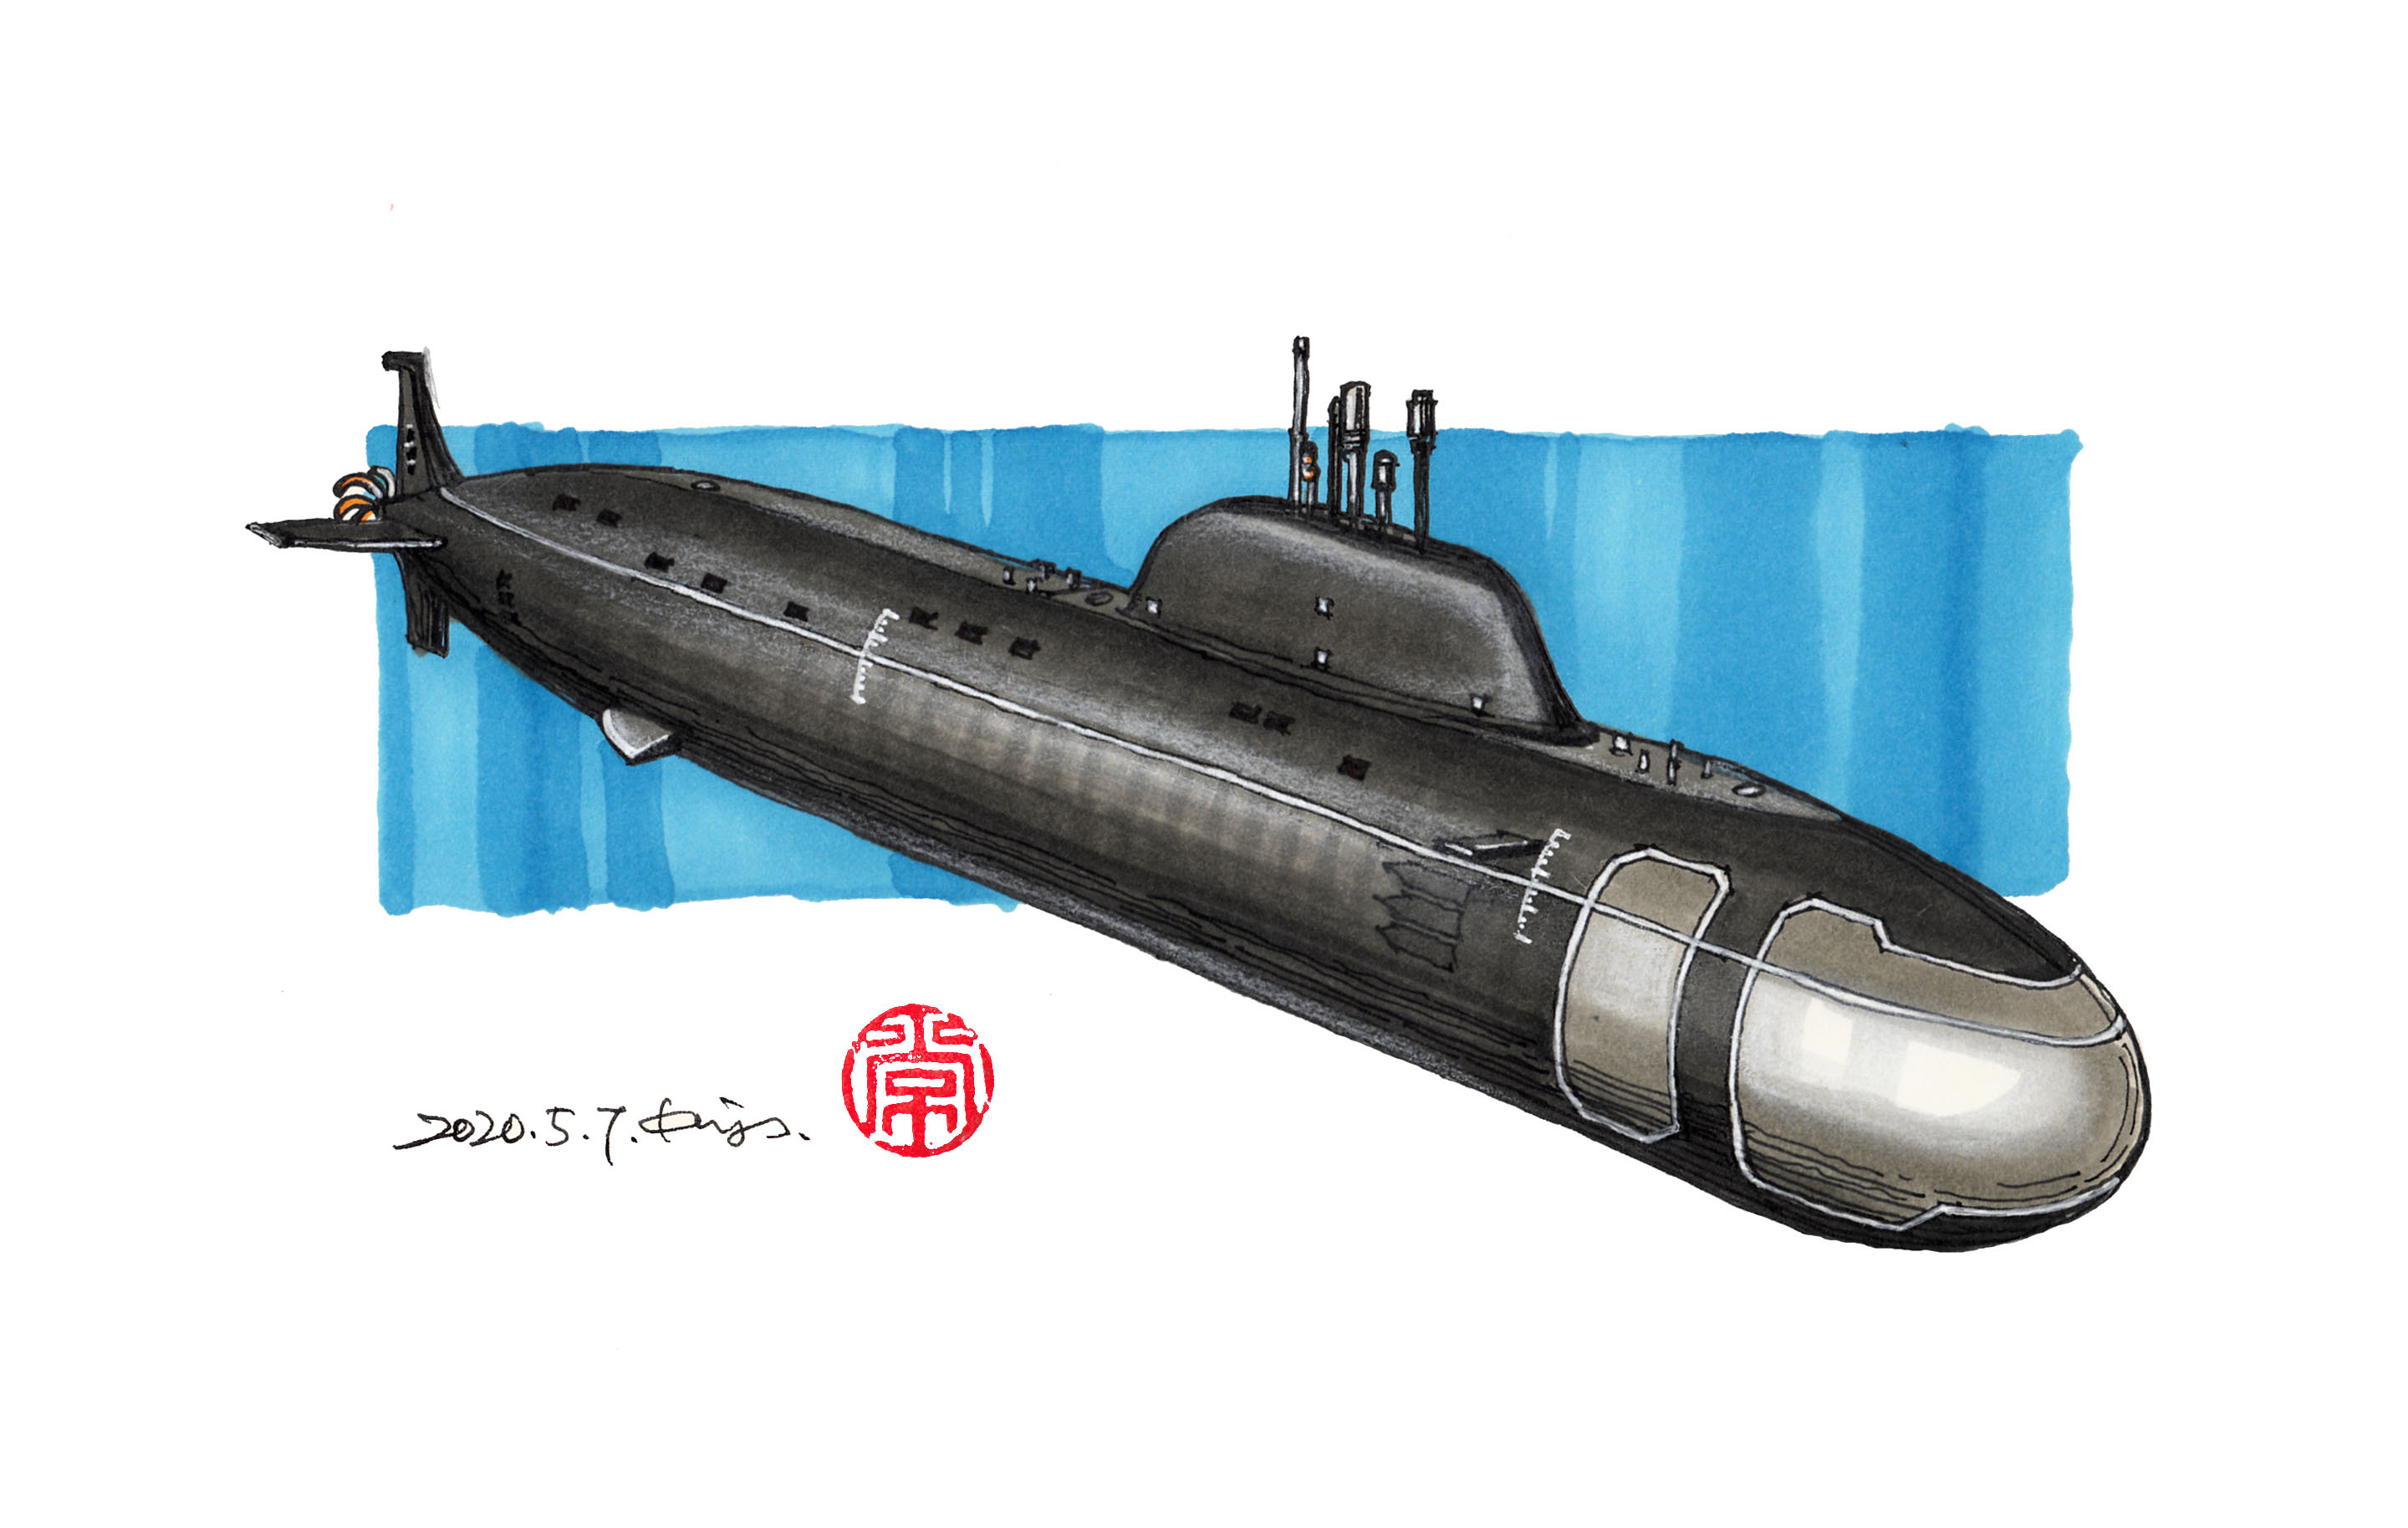 较复杂的潜水艇画法图片